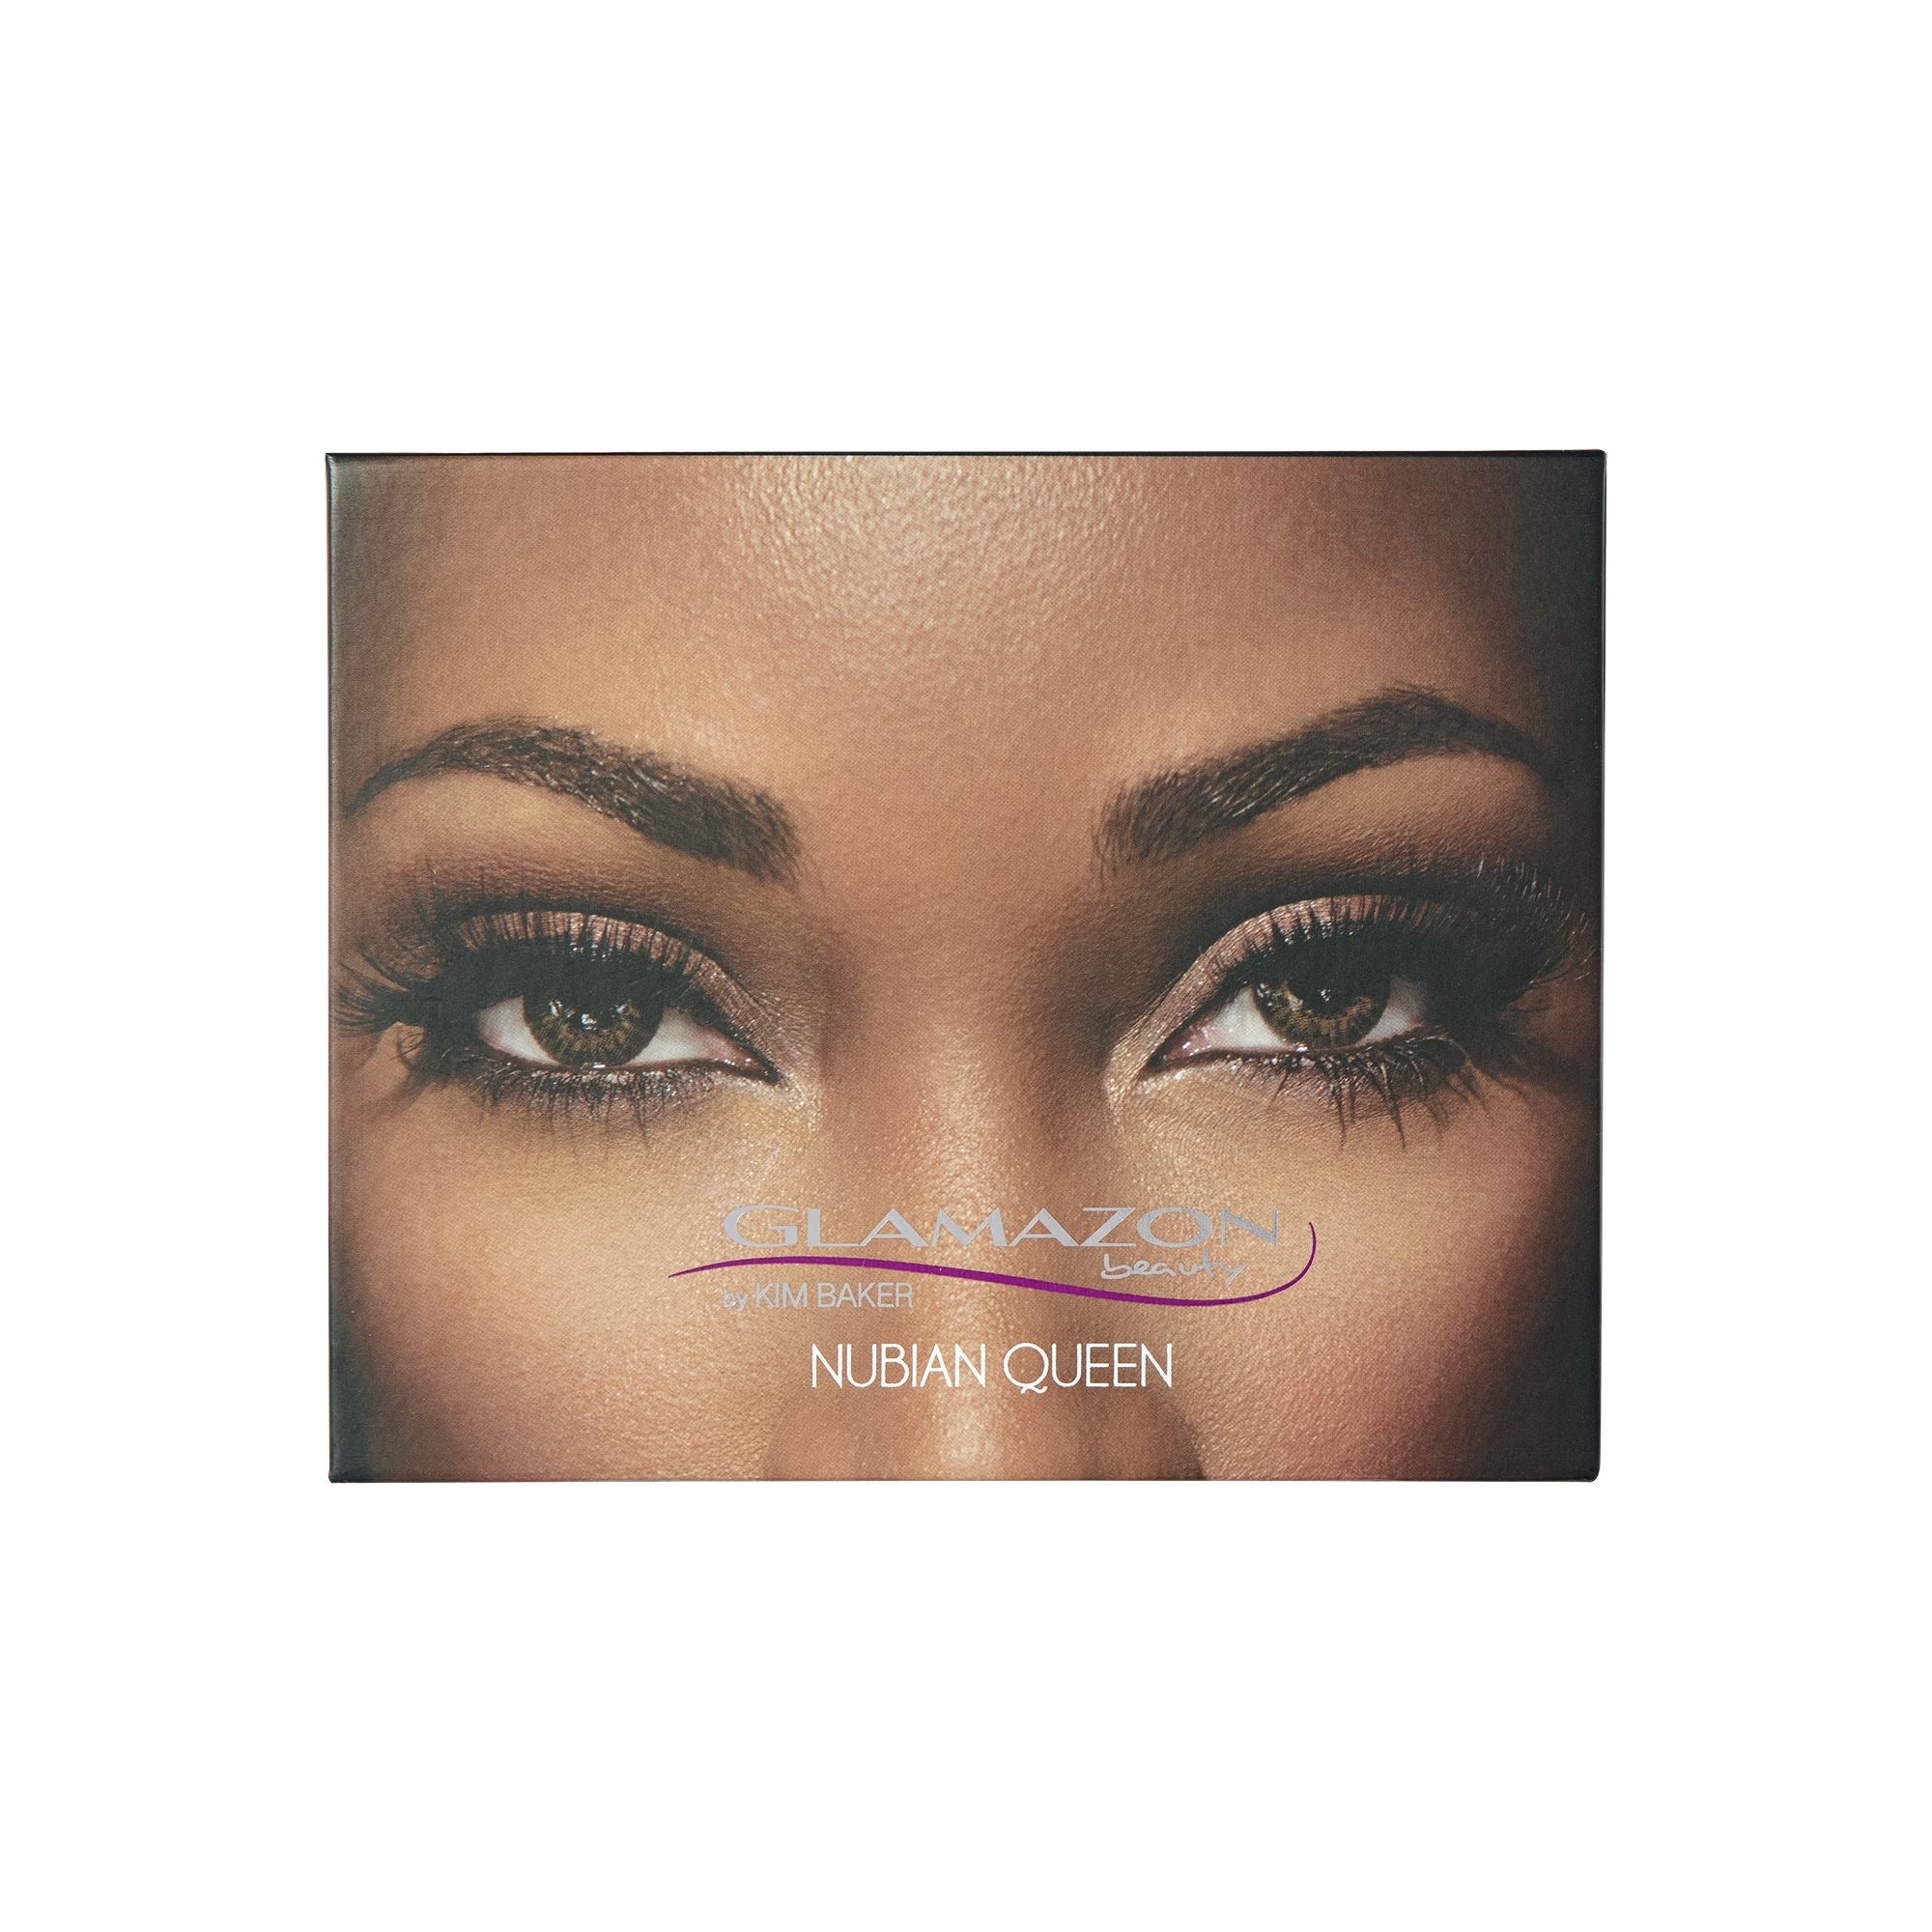 Nubian Queen Eyeshadow Palette - Glamazon Beauty